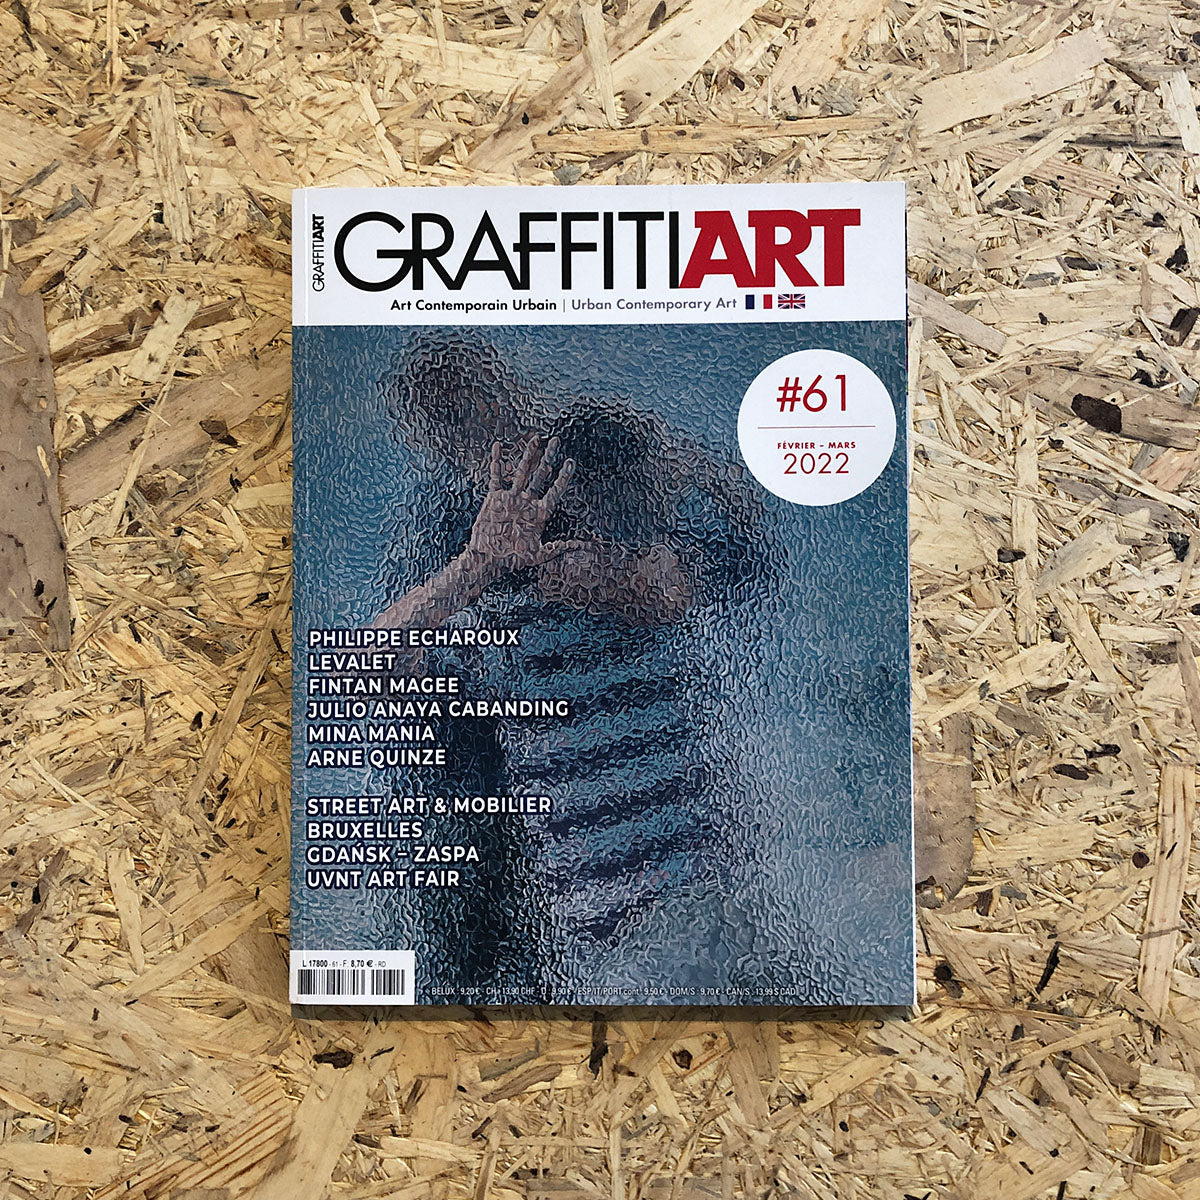 GraffitiArt Magazine #61